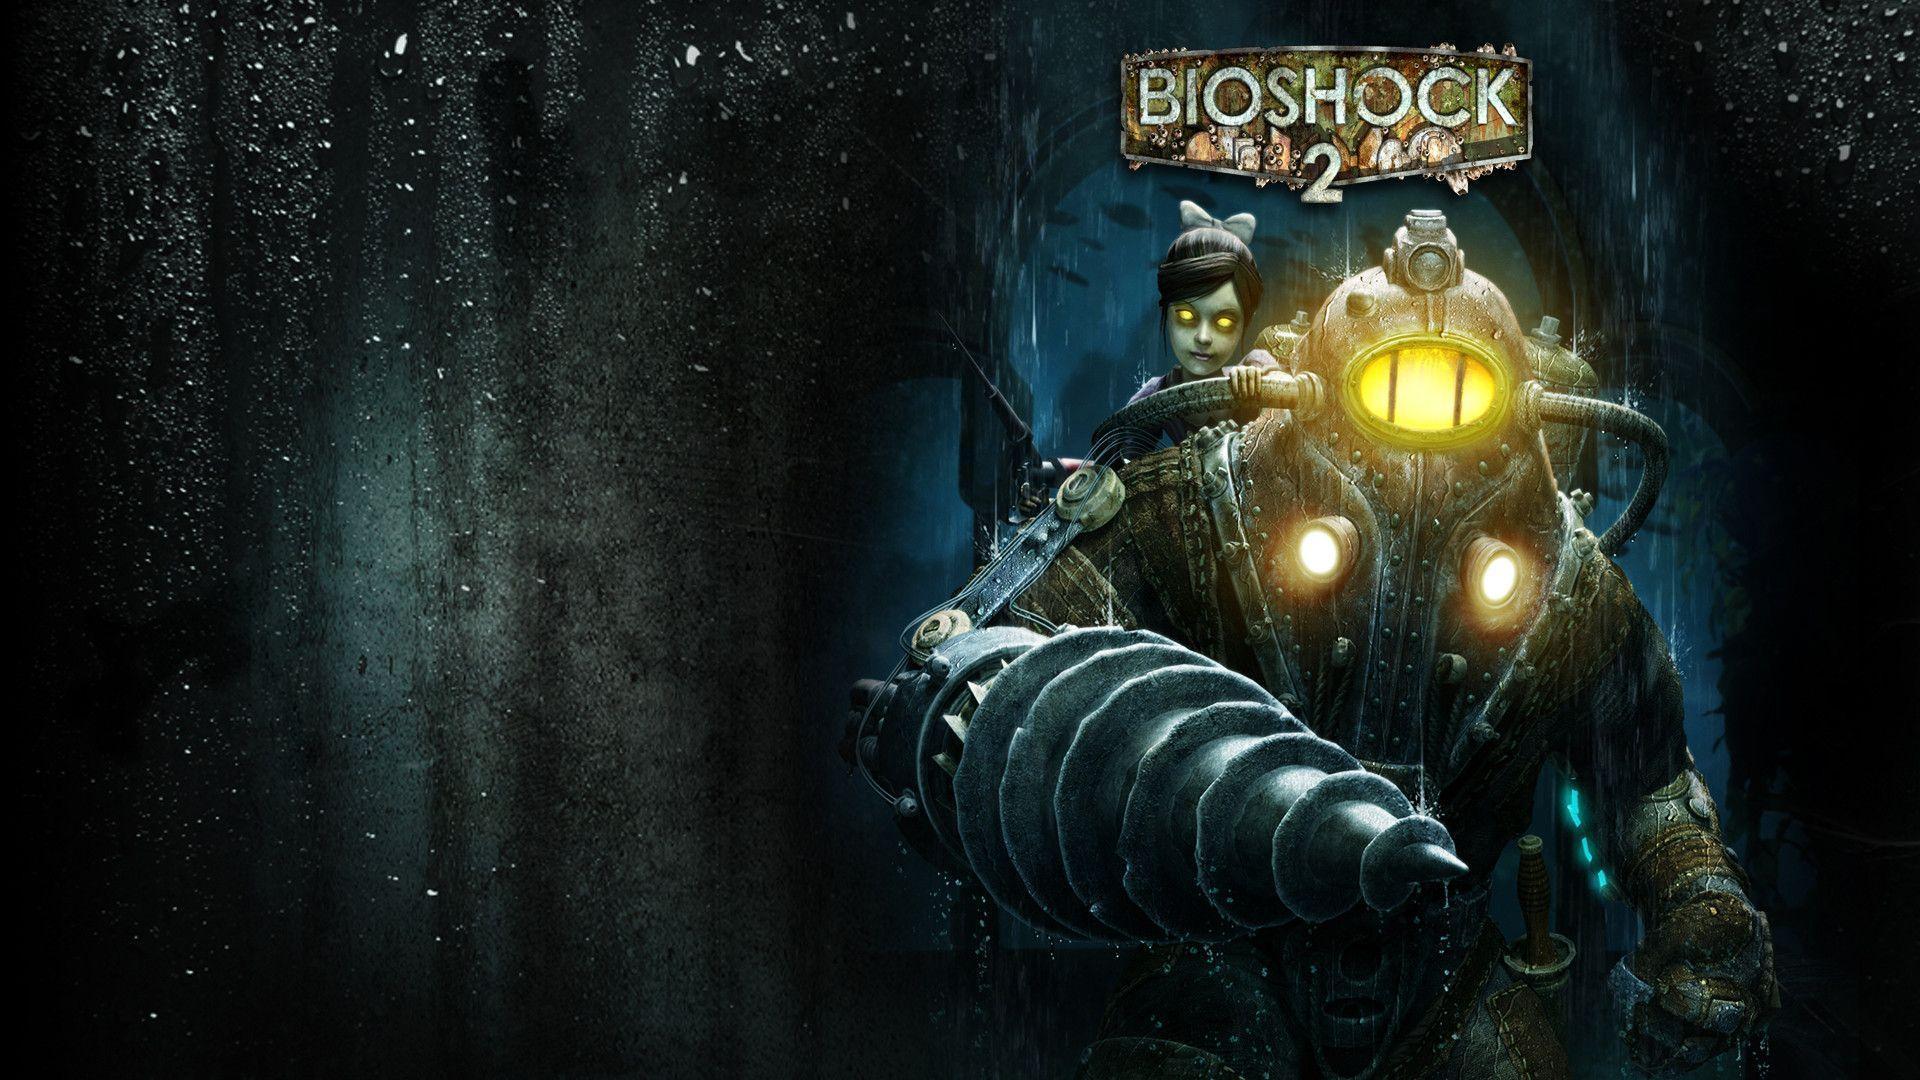 Fantastic Bioshock 2 Wallpaper 21503 1920x1080 px